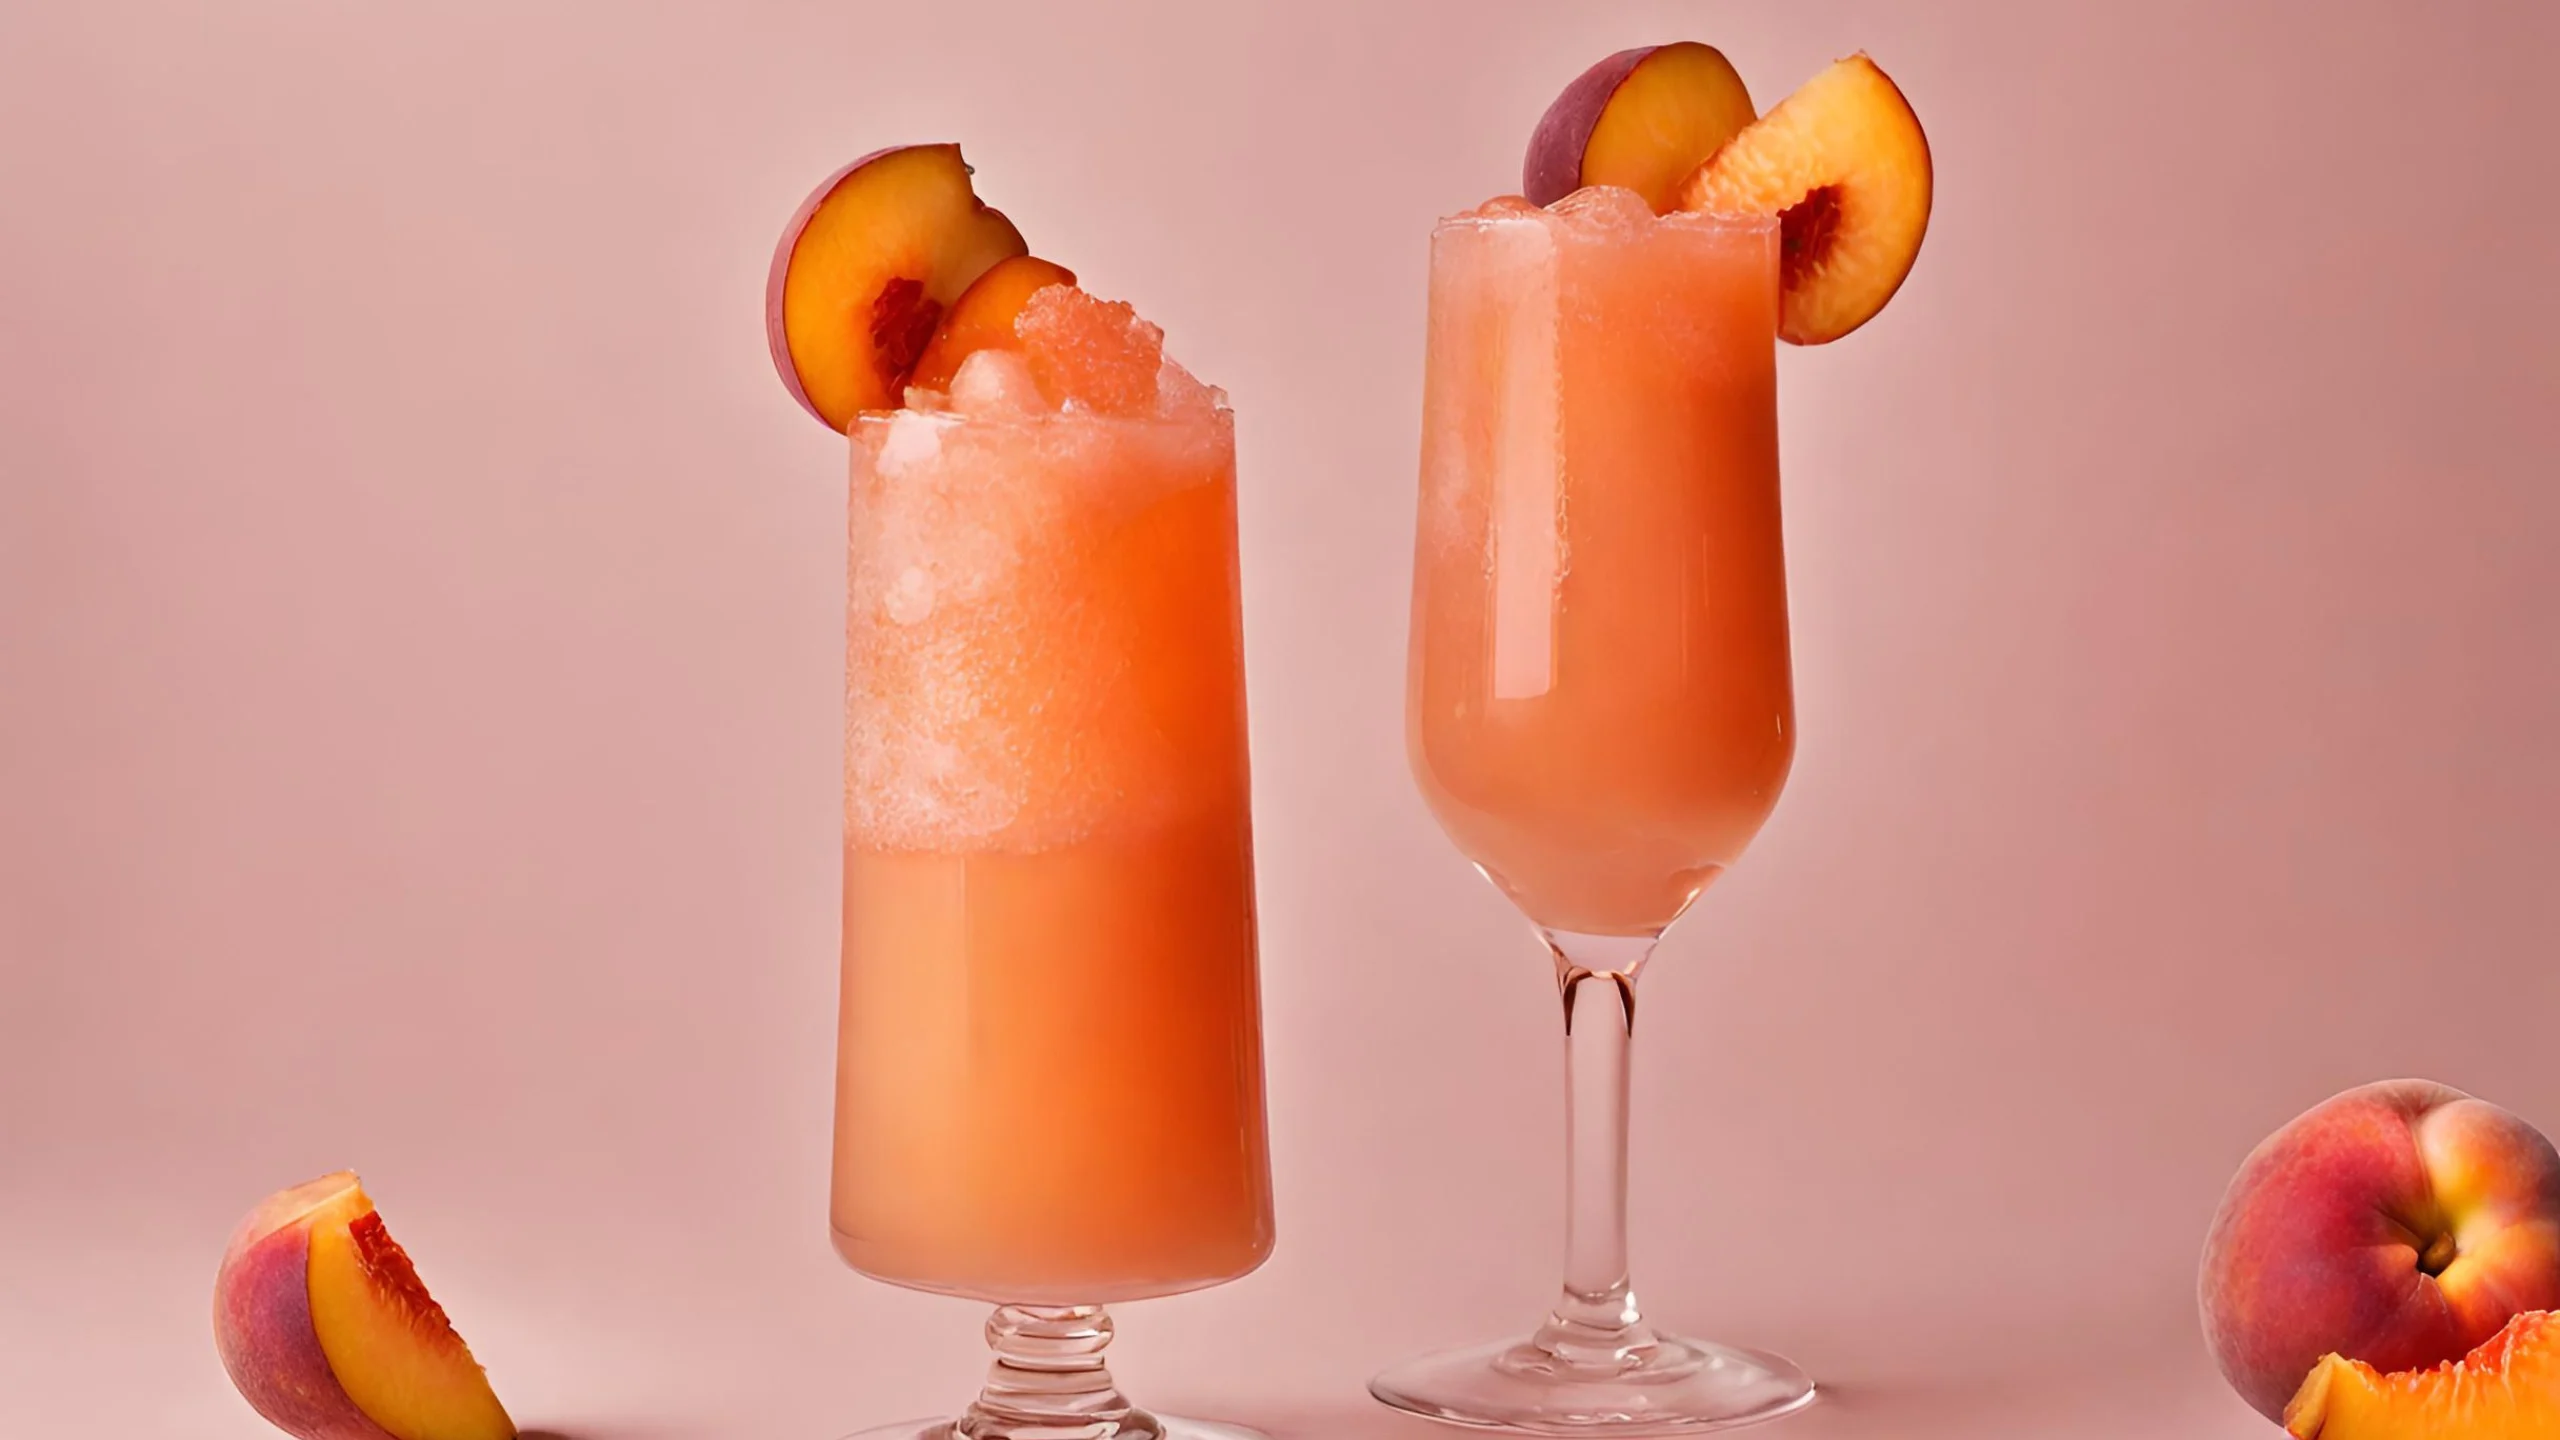 Cócteles Peach Fuzz: drinks inspirados en el color del año